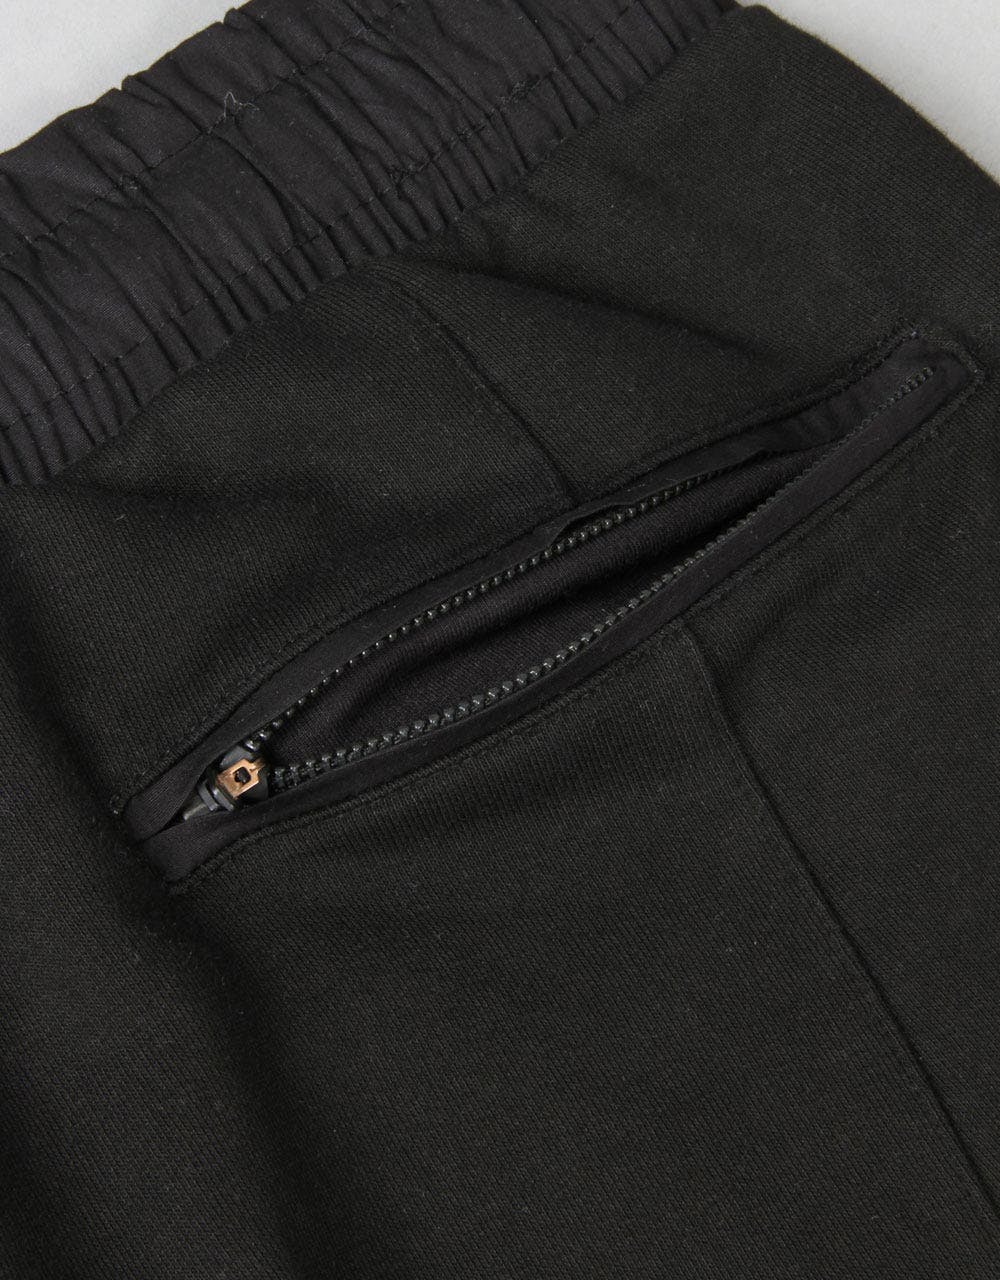 Route One Premium Sweatpants - Black